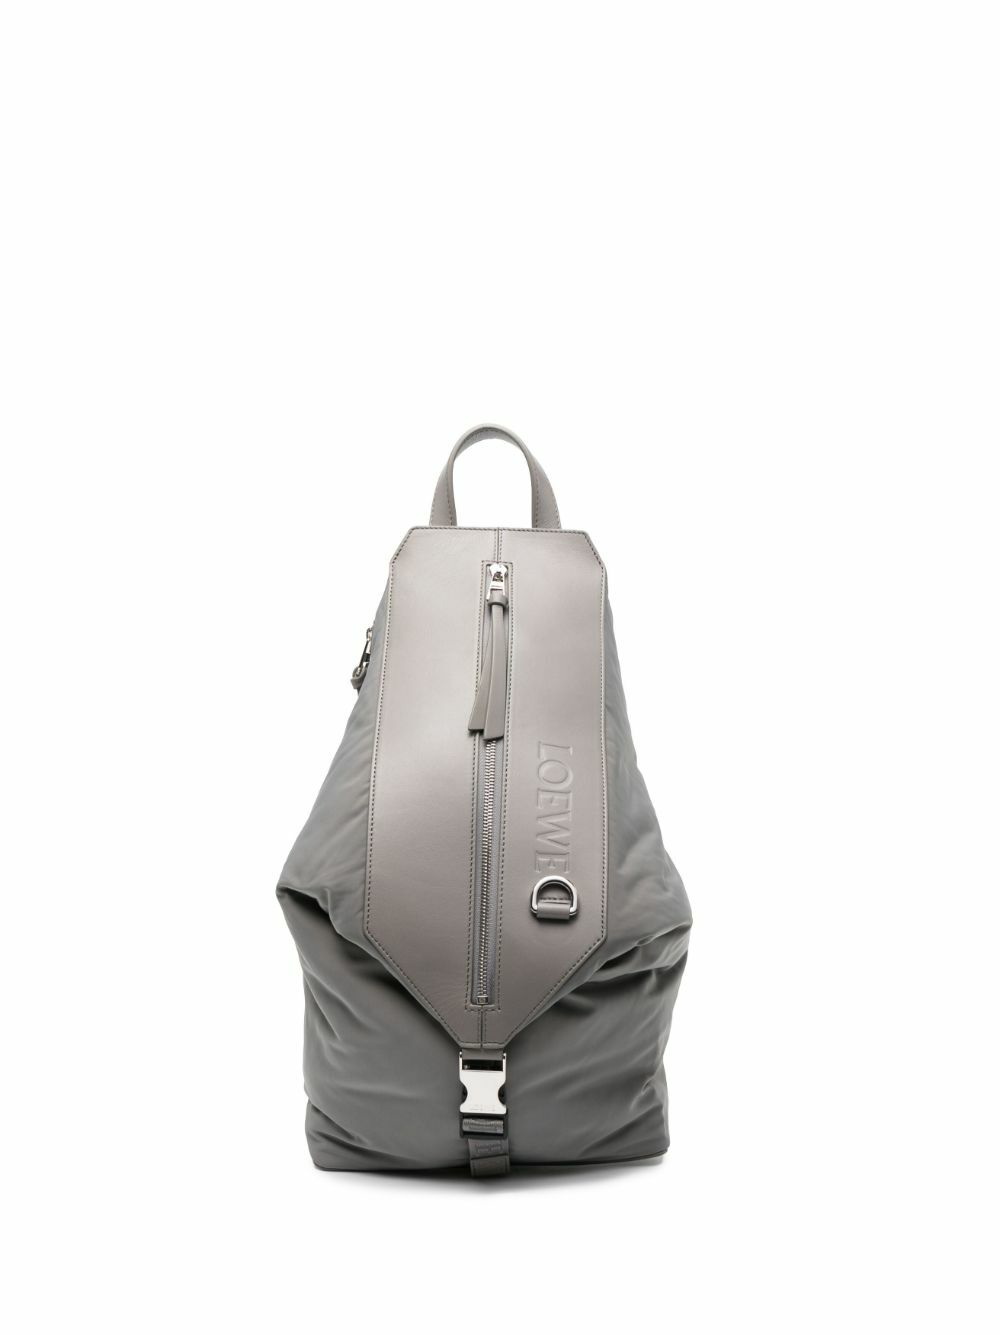 Loewe Goya Backpack, $2,450, farfetch.com